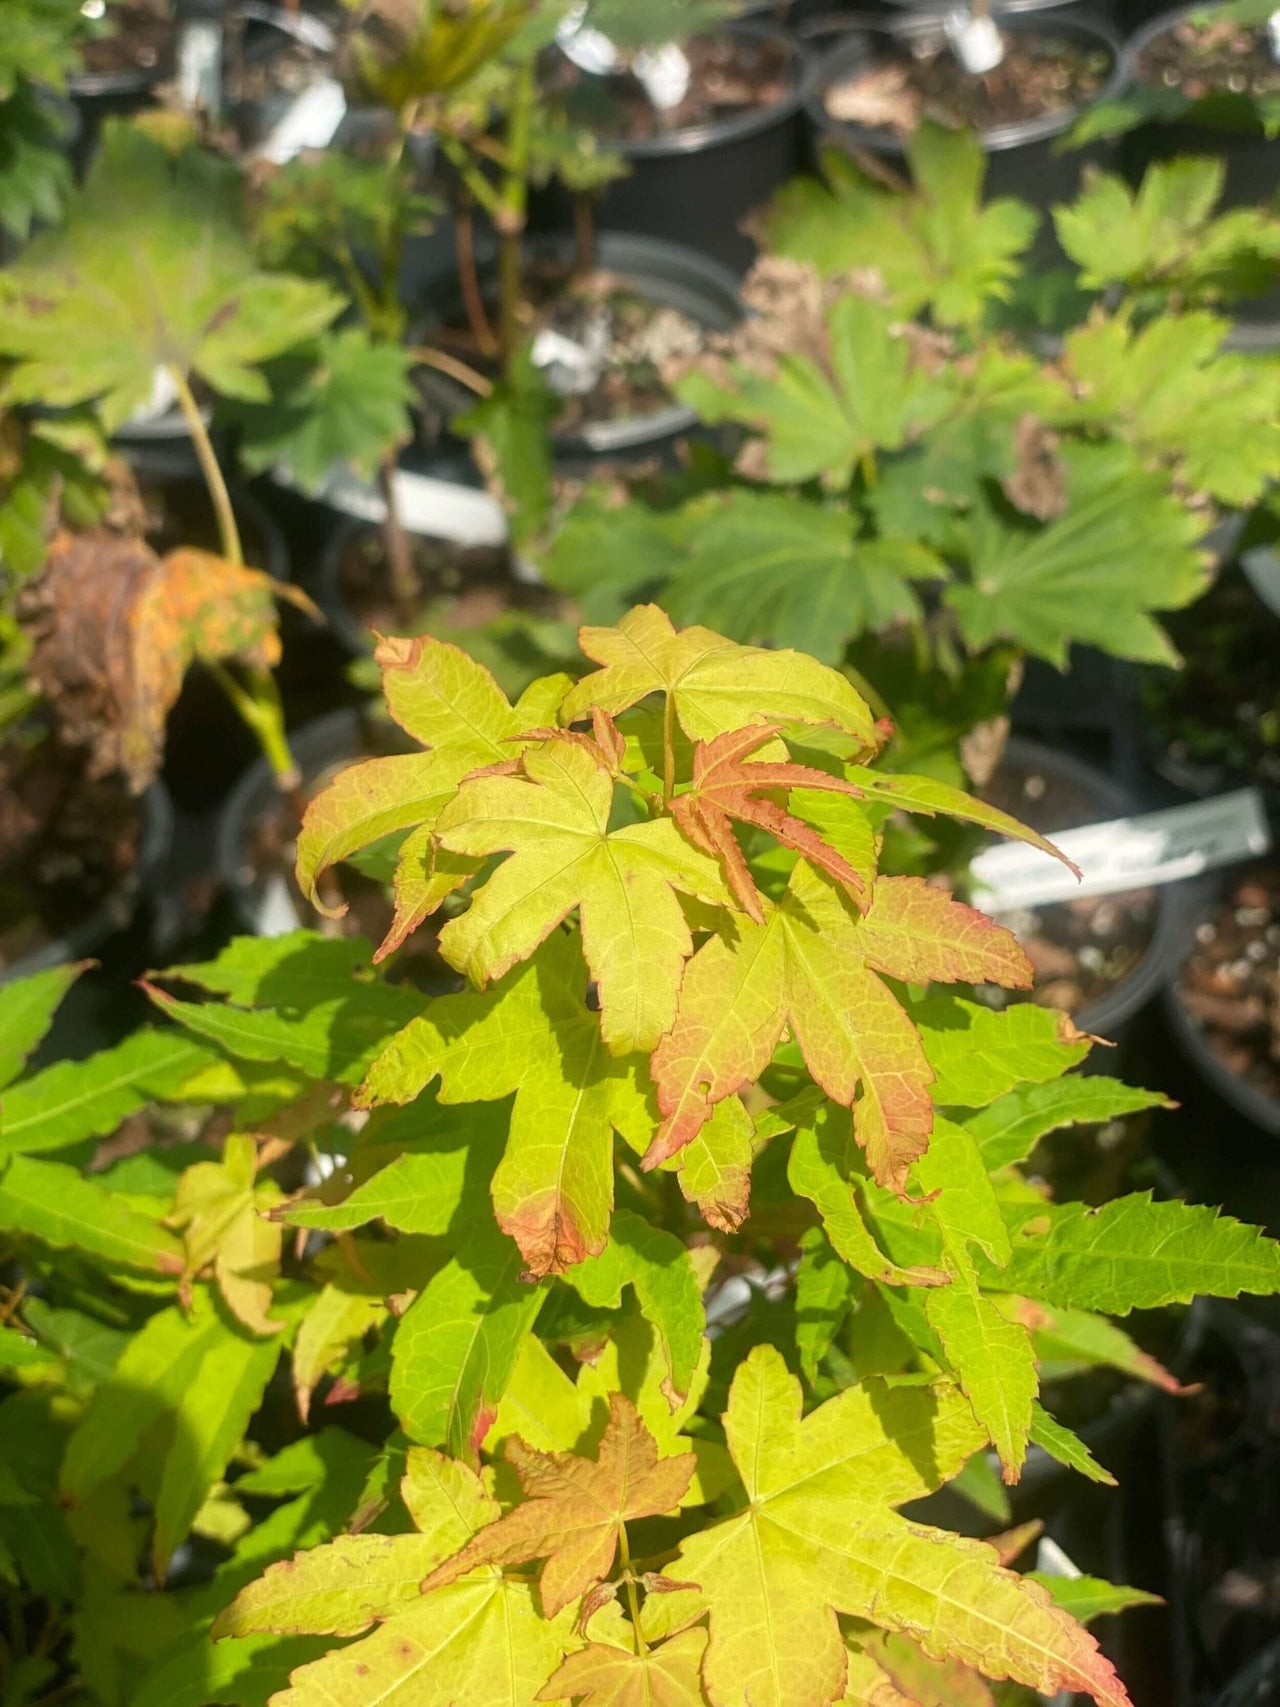 Acer oliverianum 'Hot Blonde' - mapleridgenursery